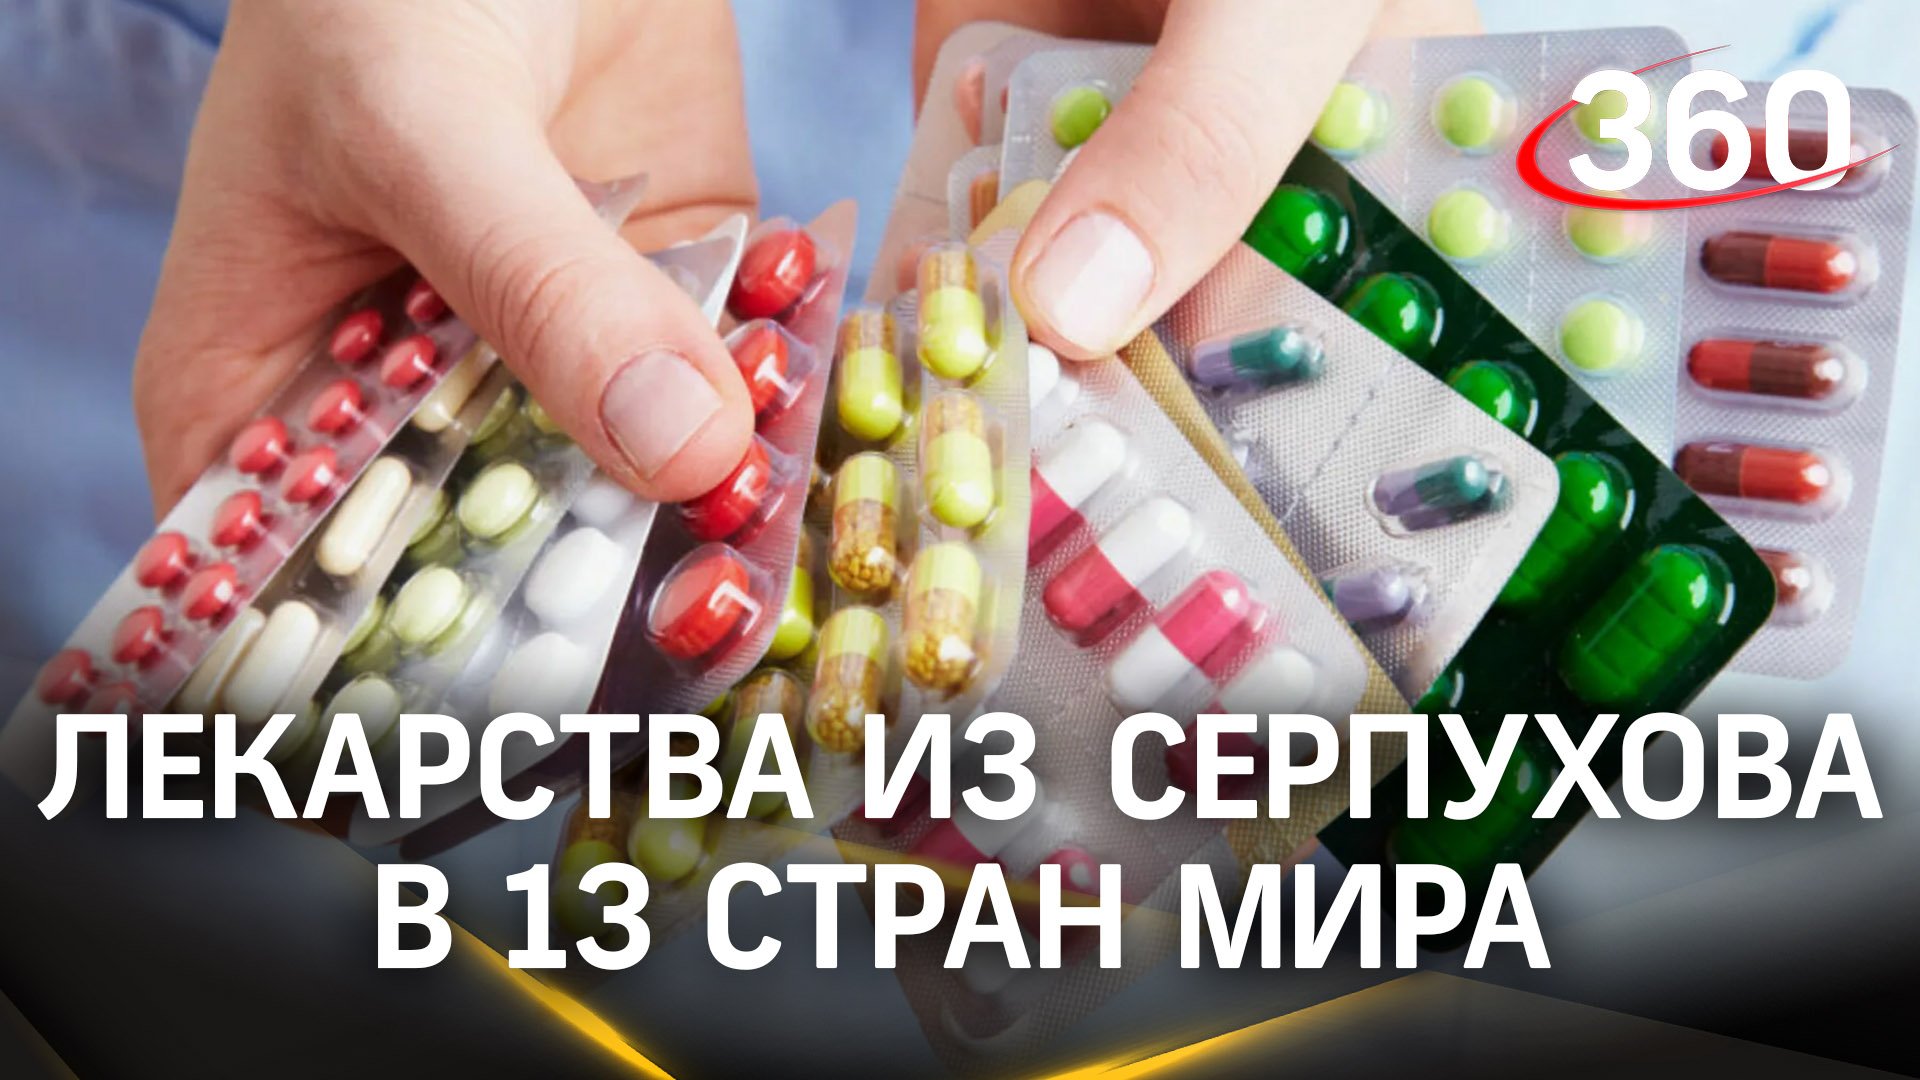 Компания из Серпухова экспортирует лекарственные препараты в 13 стран мира